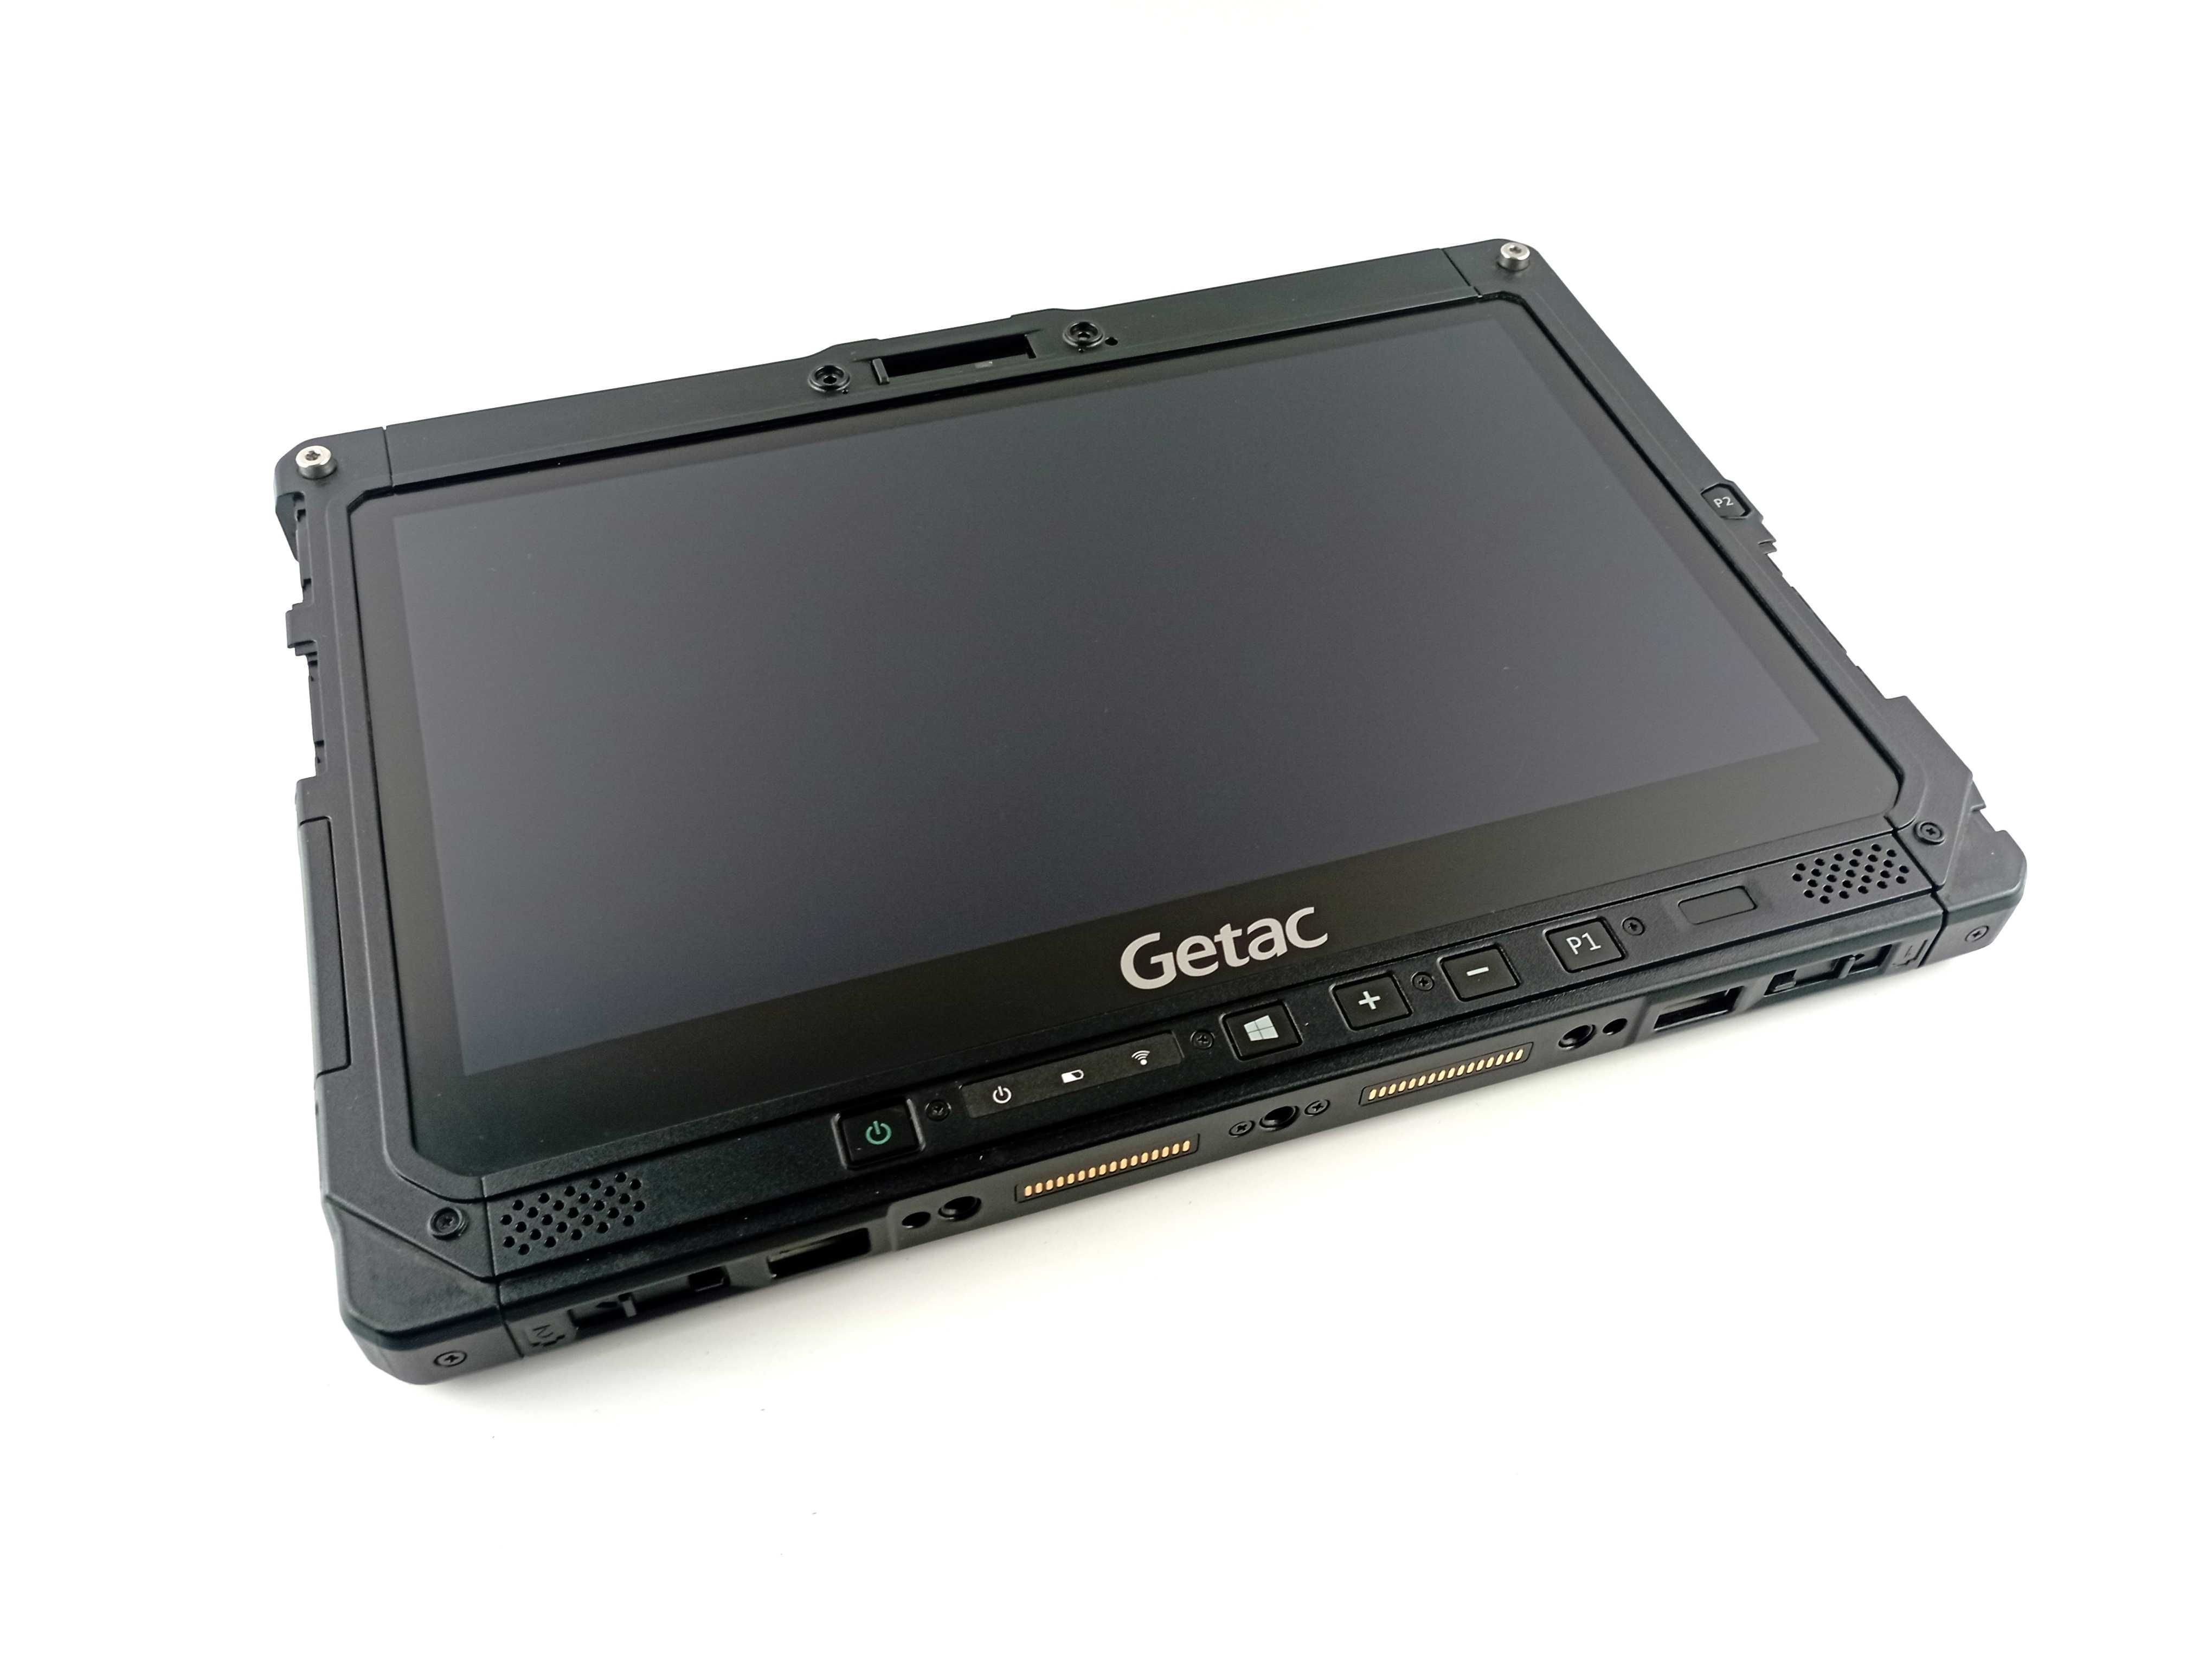 Захищений військовий планшет Getac K120 G1 i5-8250U GPS/LAN. Уцінка